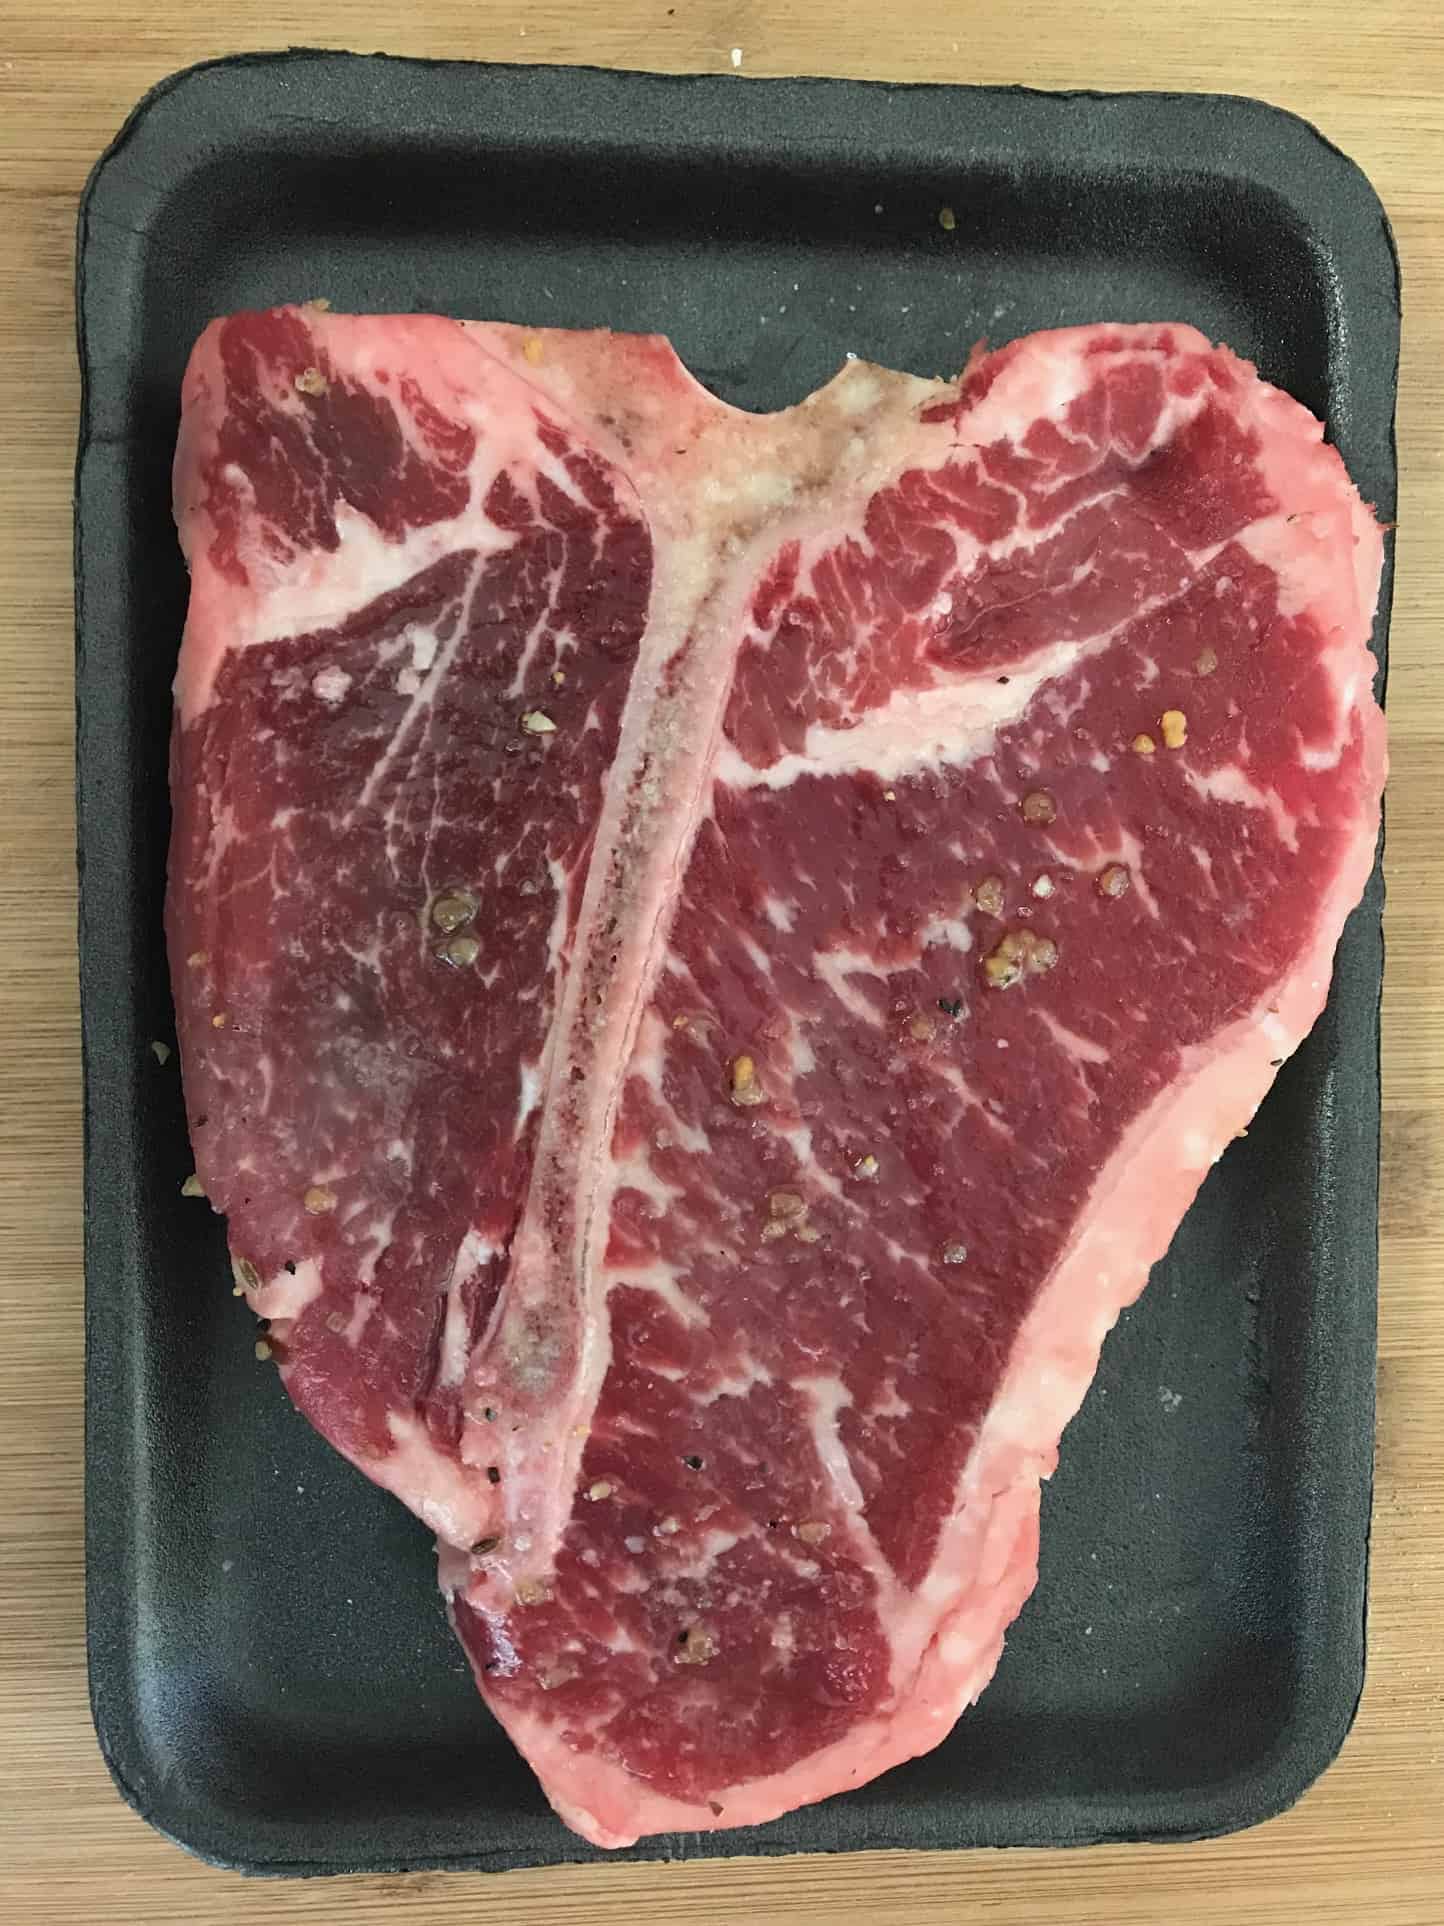 Raw steak in original packaging overhead shot